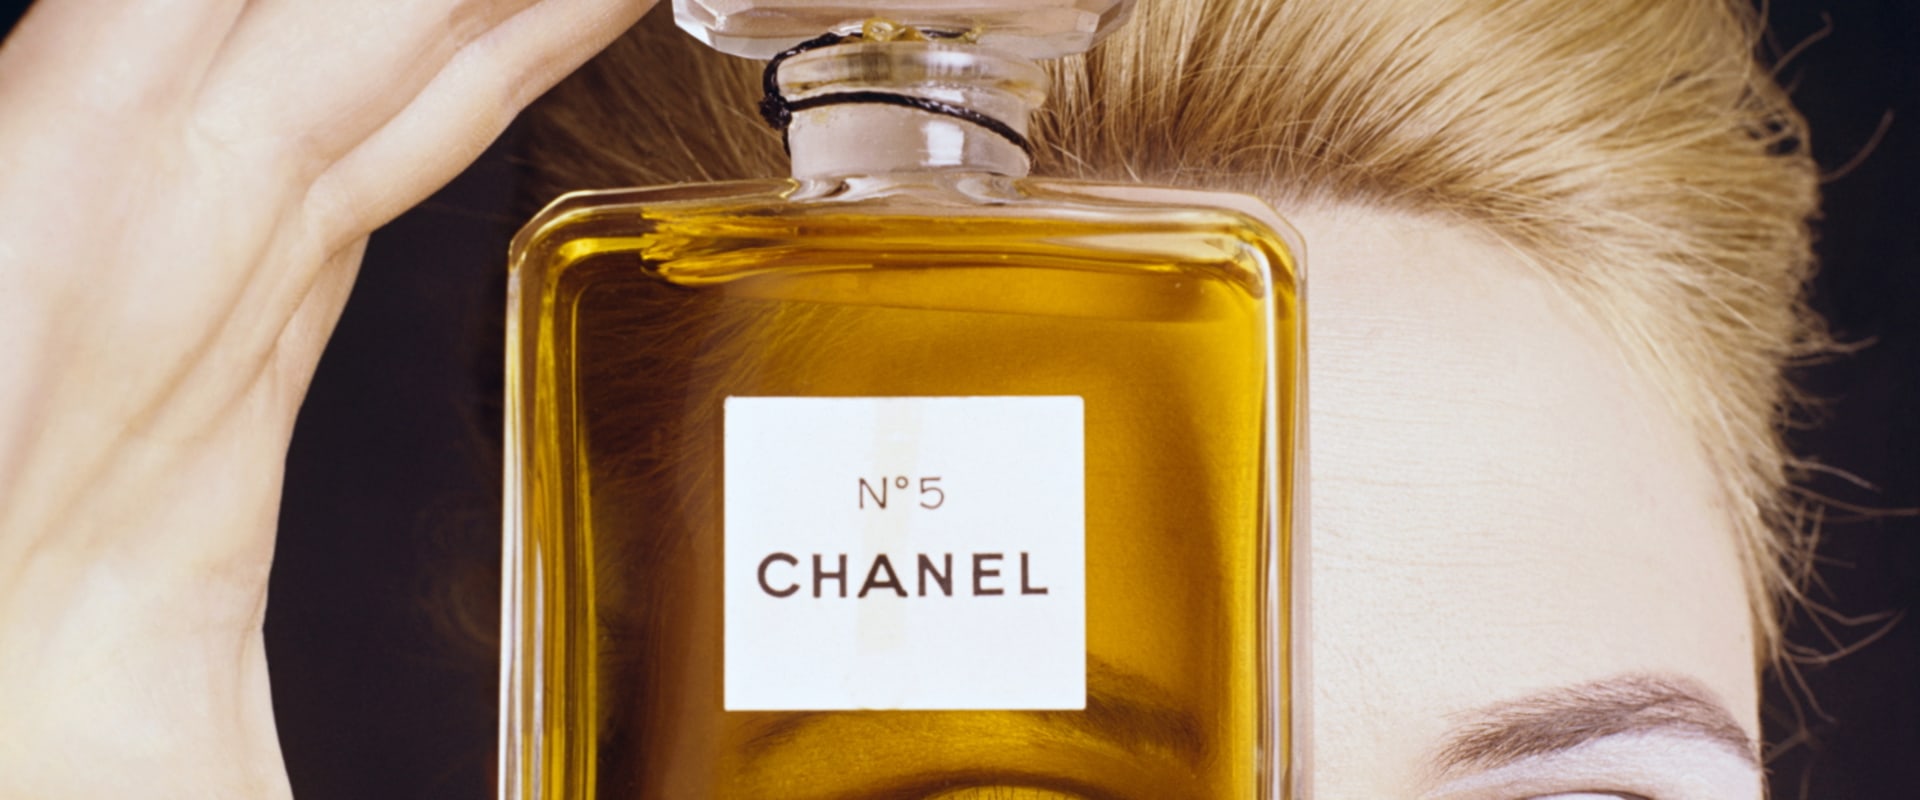 How long does chanel no 5 eau de parfum last?